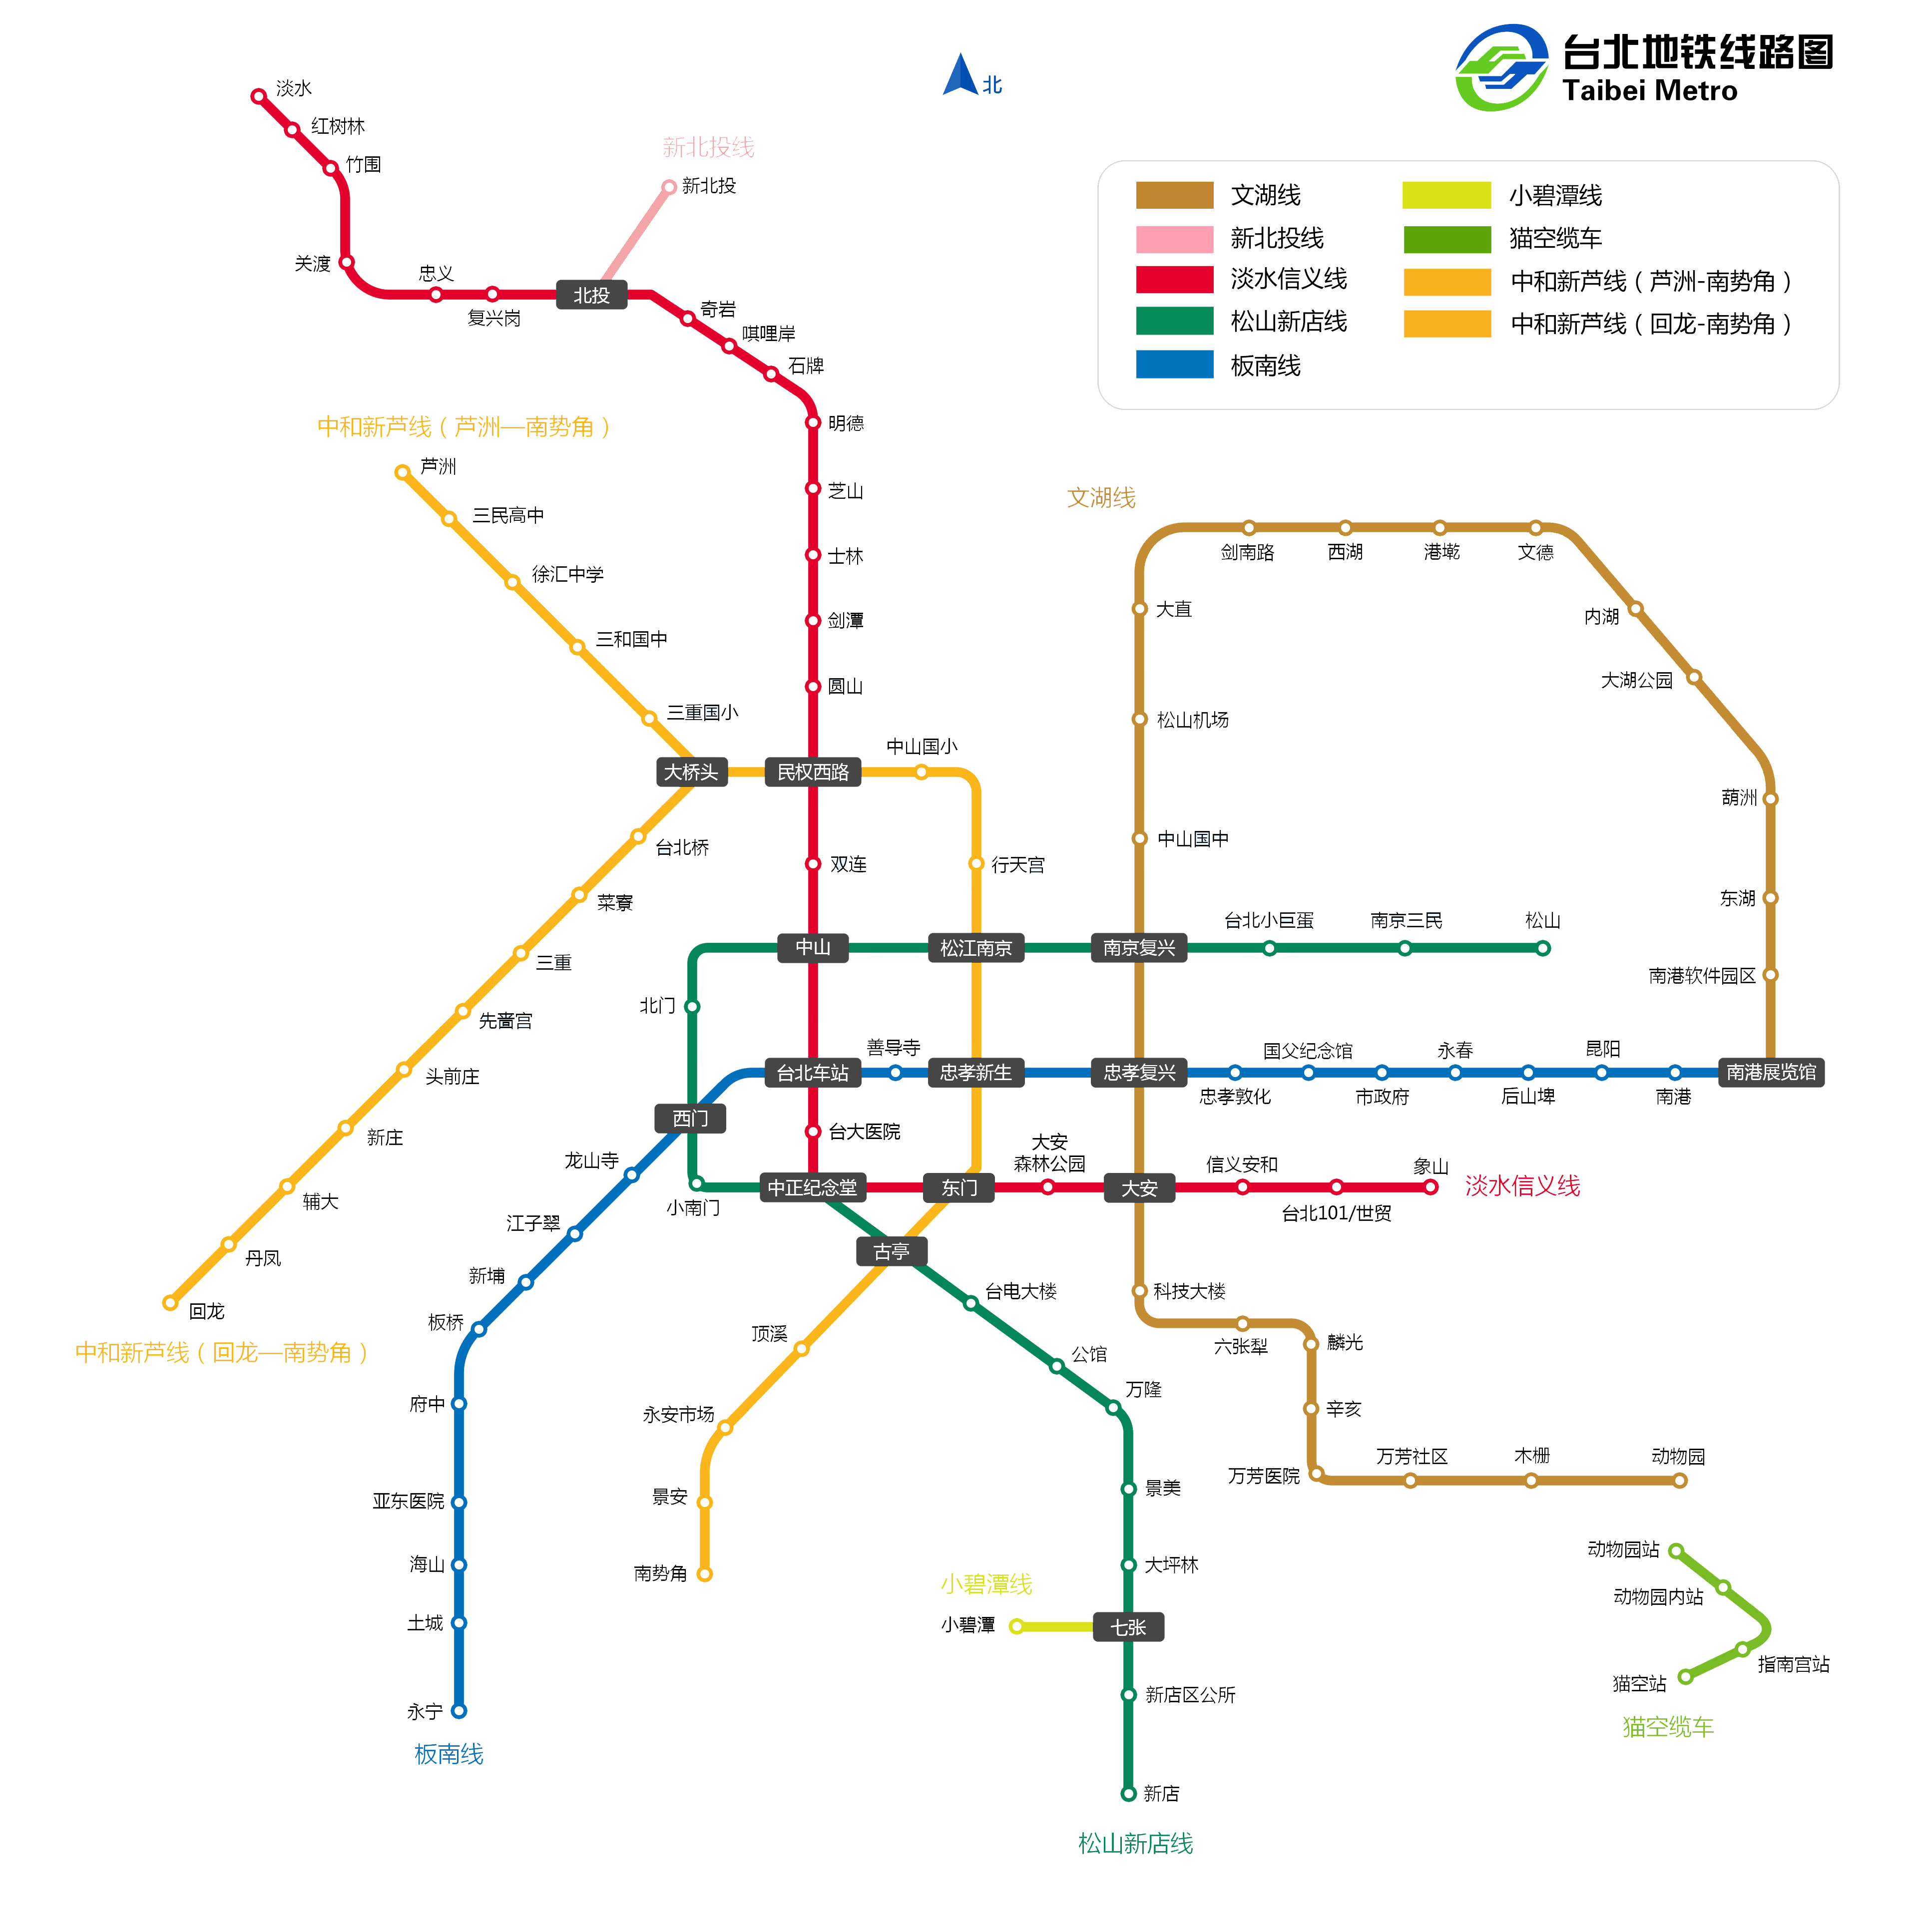 台湾火车铁轨高清图片下载-正版图片500450495-摄图网